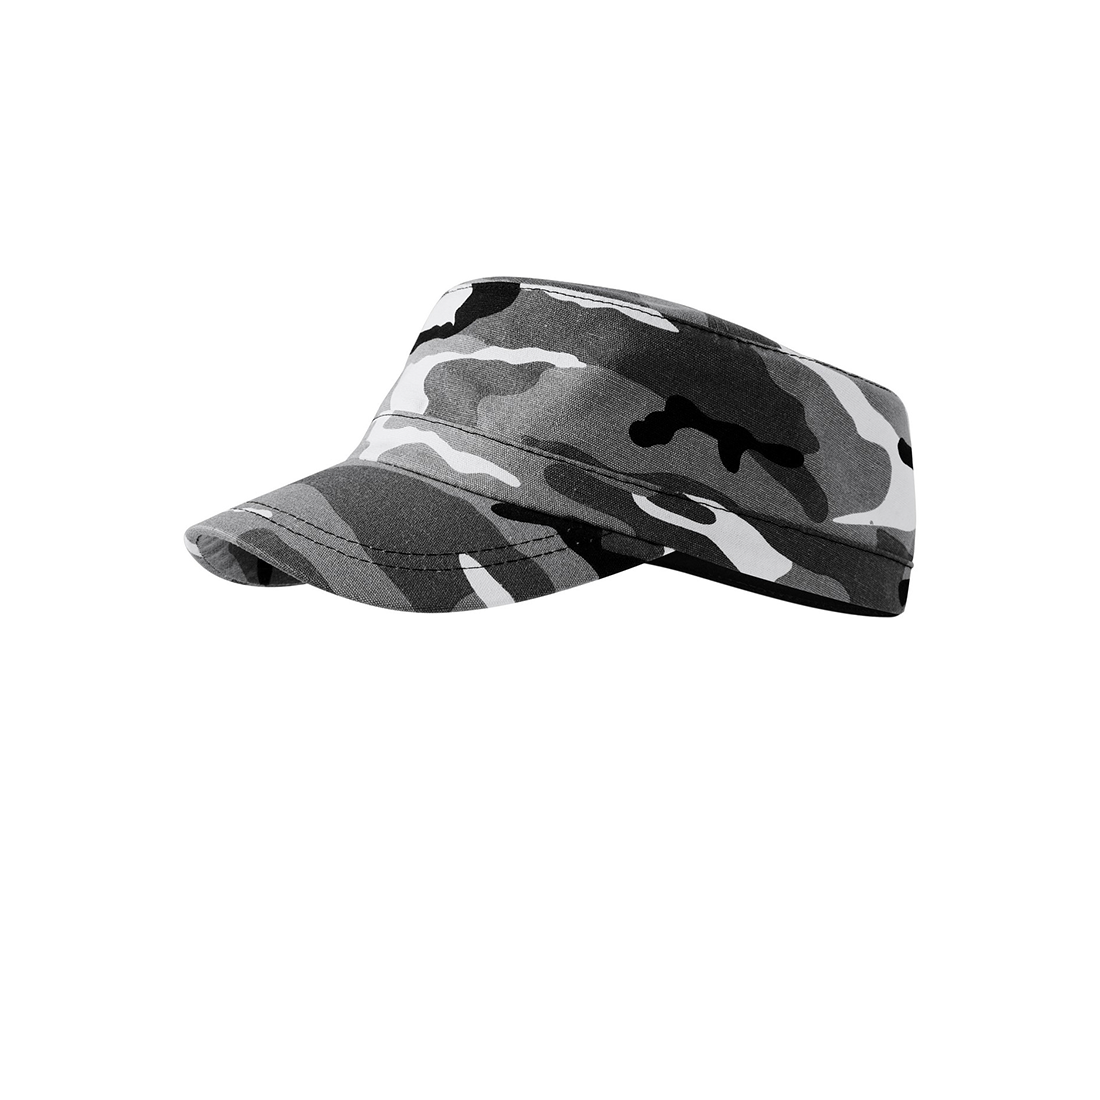 Berretto camouflage unisex - Abbigliamento di protezione